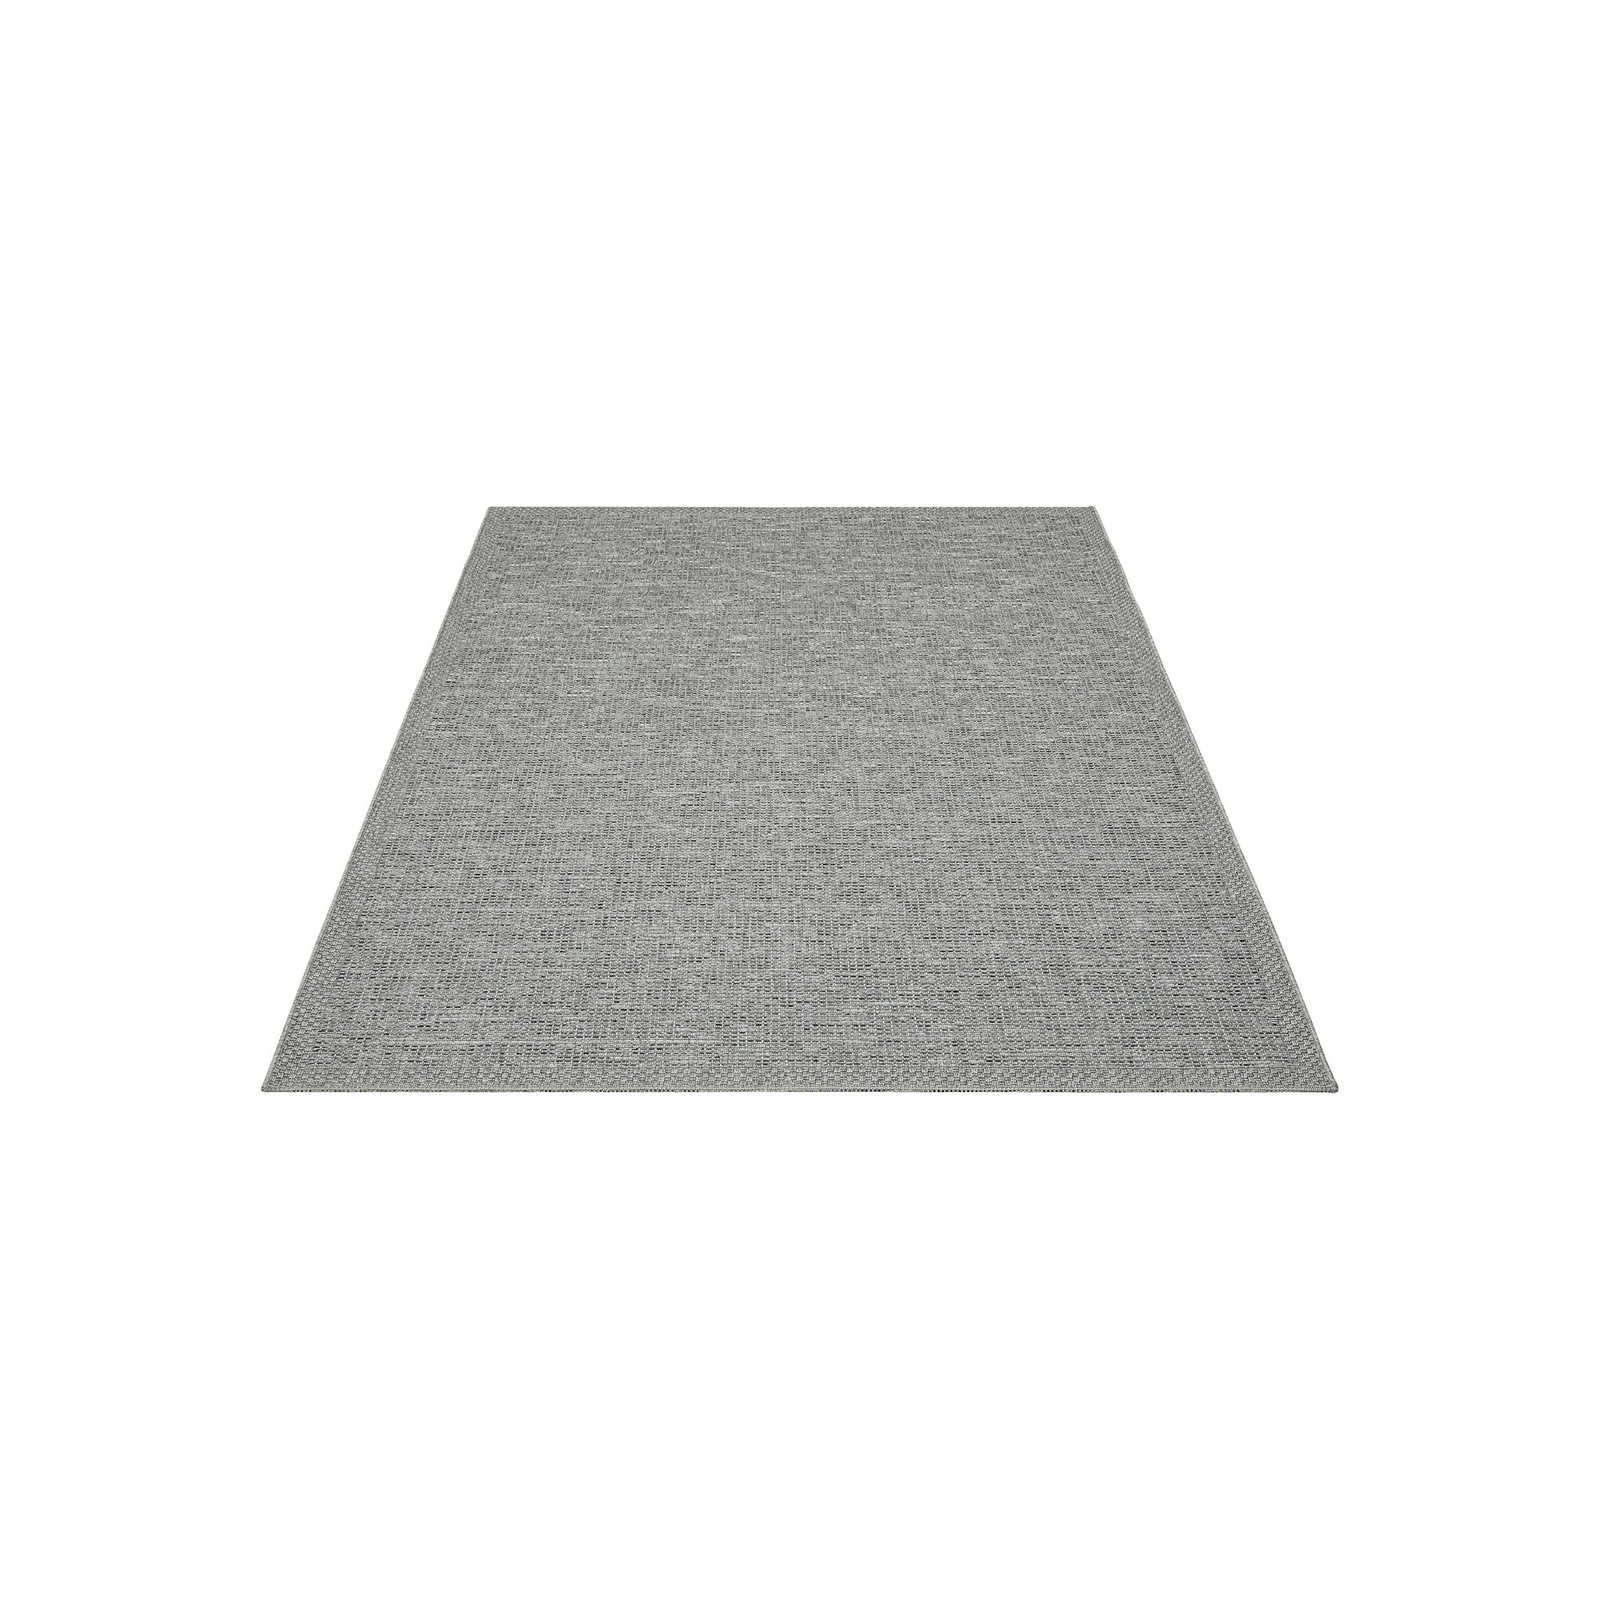 Schlichter Outdoor Teppich in Grau – 200 x 140 cm
